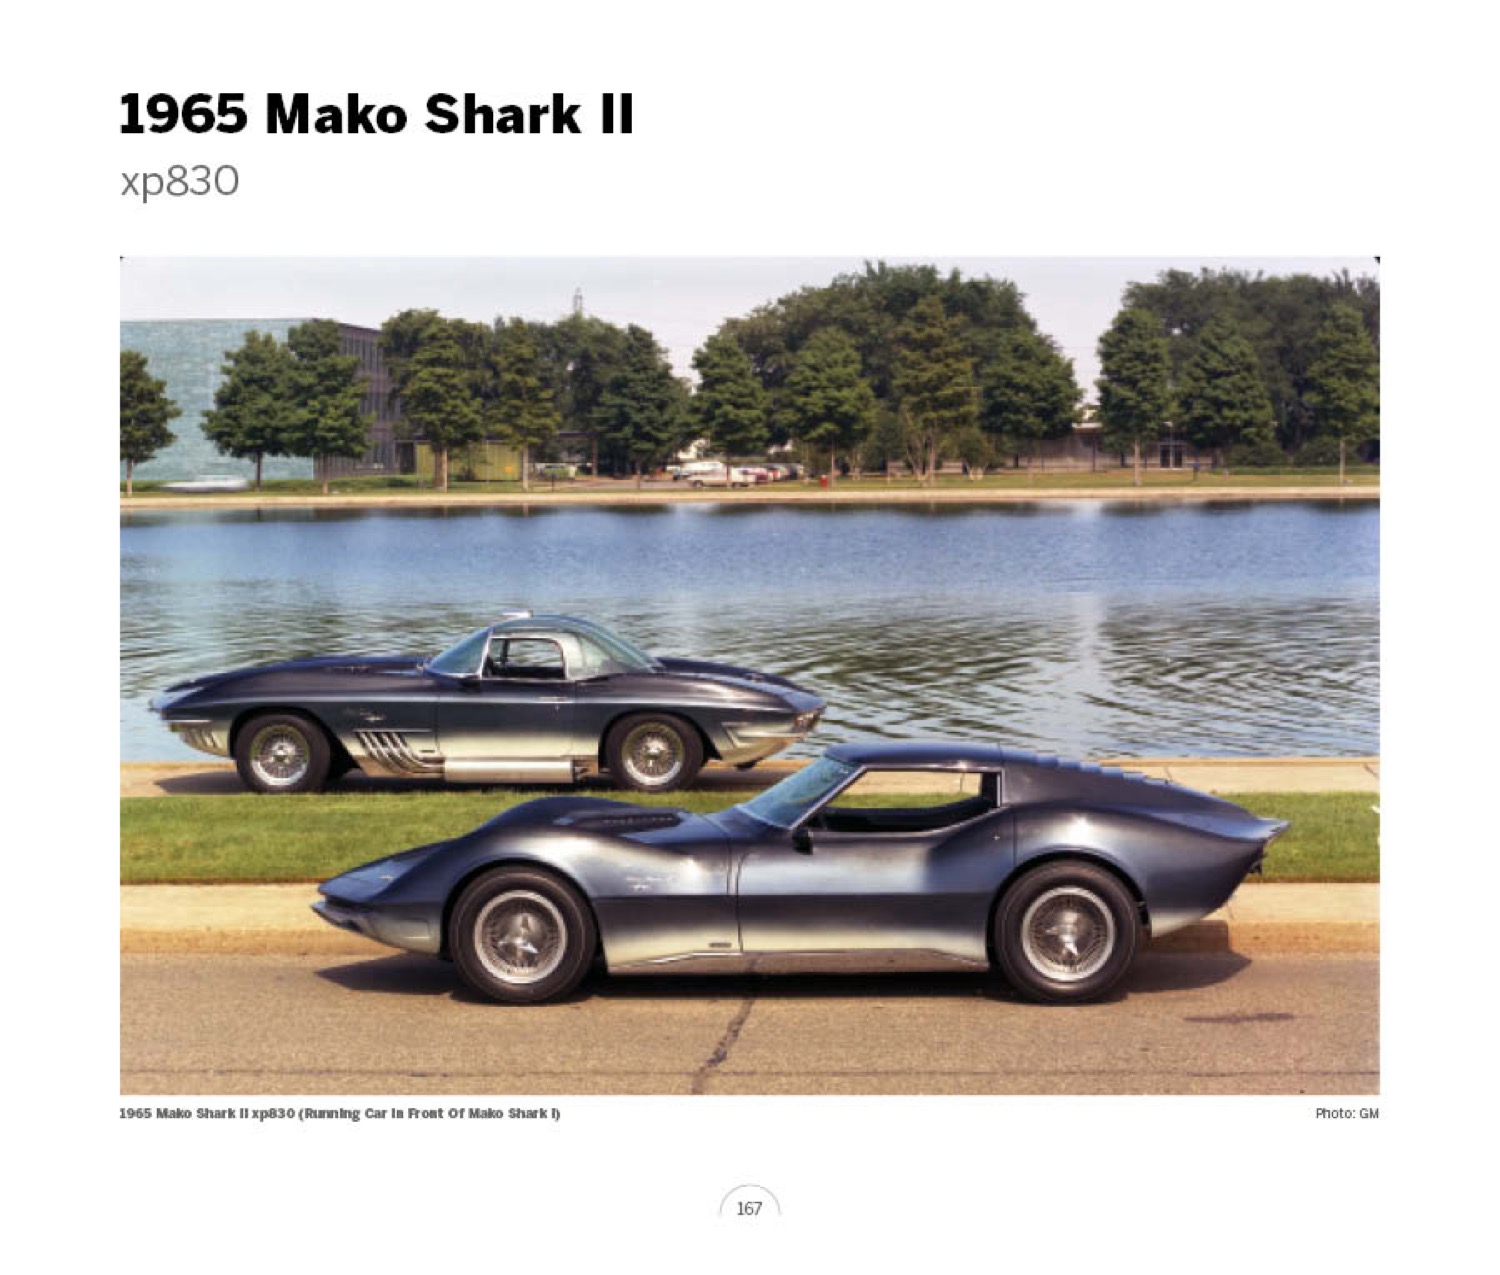 (18) 1965 Mako Shark II xp830 LoRez.jpg